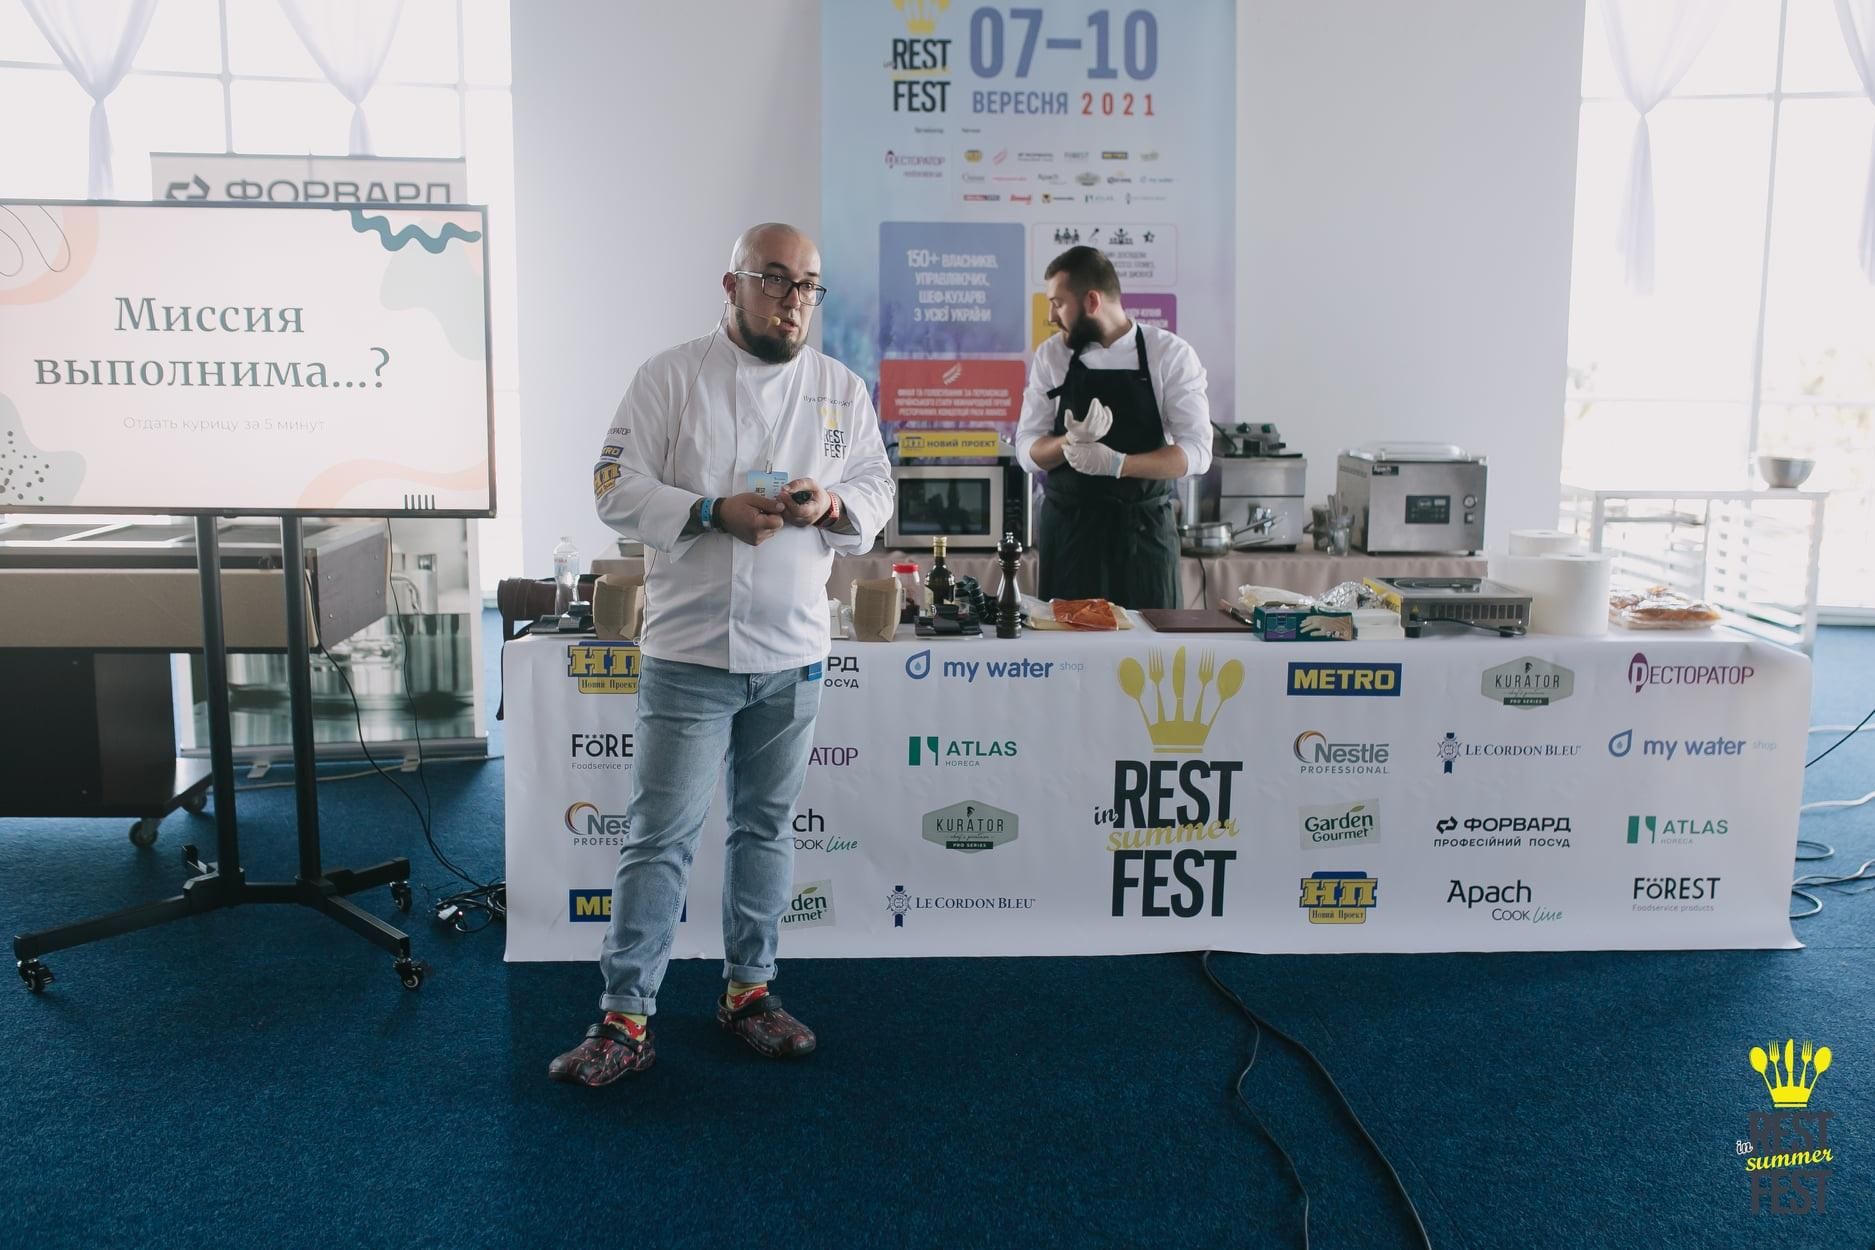 Нещодавно завершився фестиваль "InRestFest'2021" за підтримки ТМ "KURATOR": чим він запам'ятався - Новини Смачно